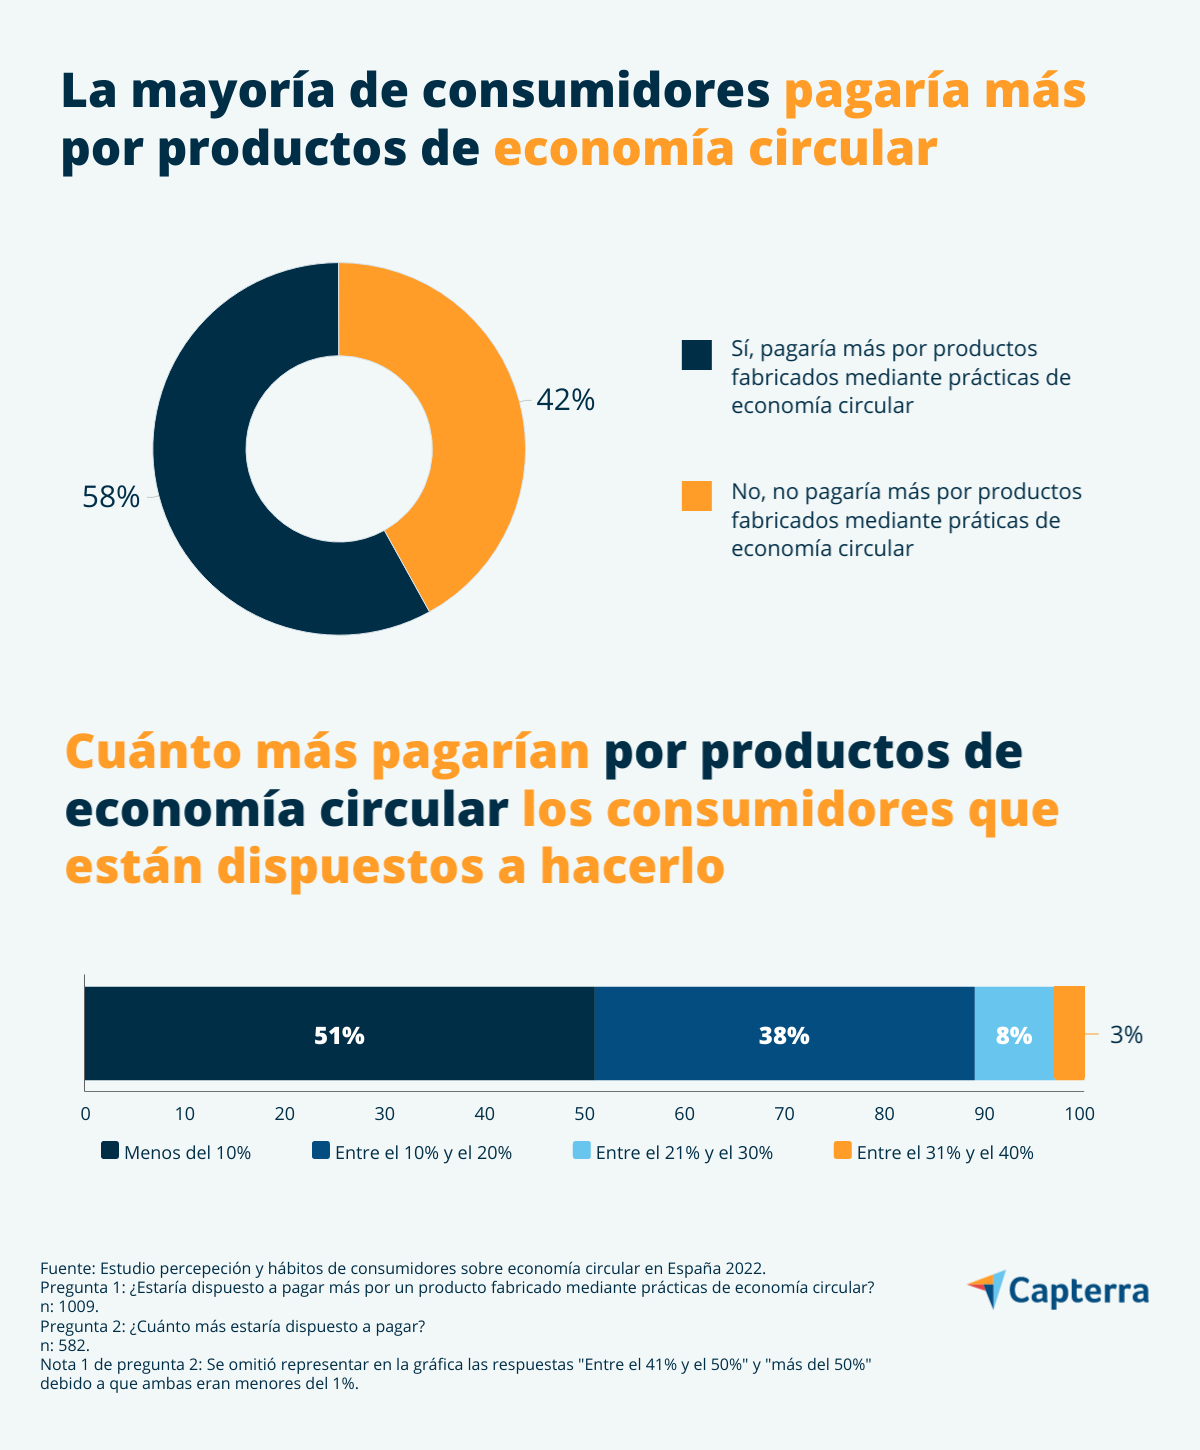 La mayoriá de los consumidores en España pagaría más por productos fabricados mediante prácticas de economía circular.